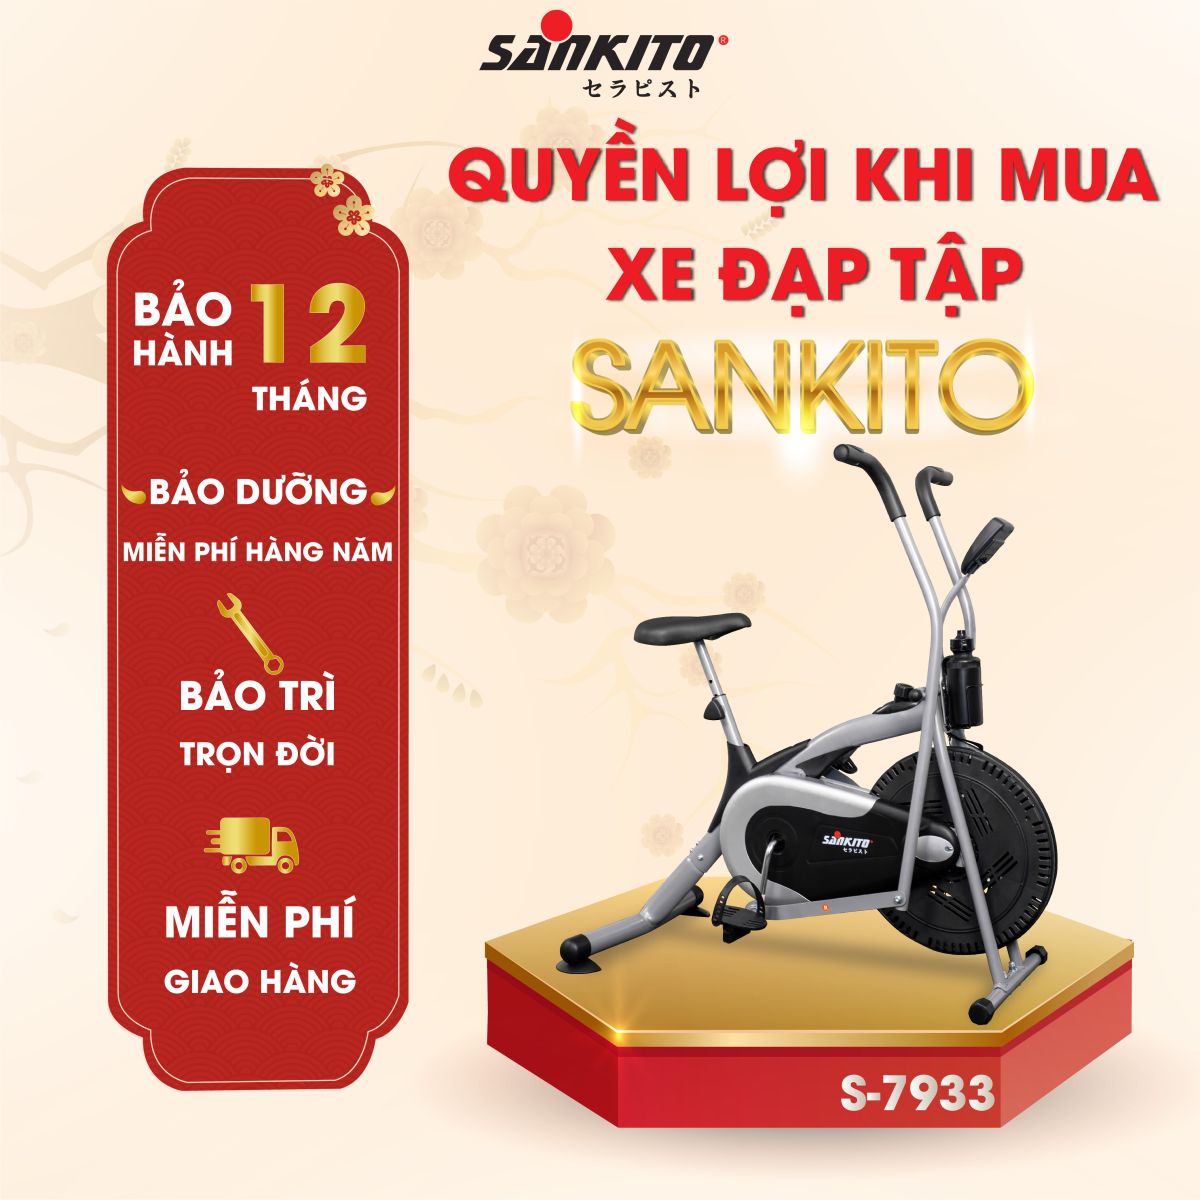 Sankito Trảng Bàng - Nơi bán xe đạp tập tại Tây Ninh uy tín